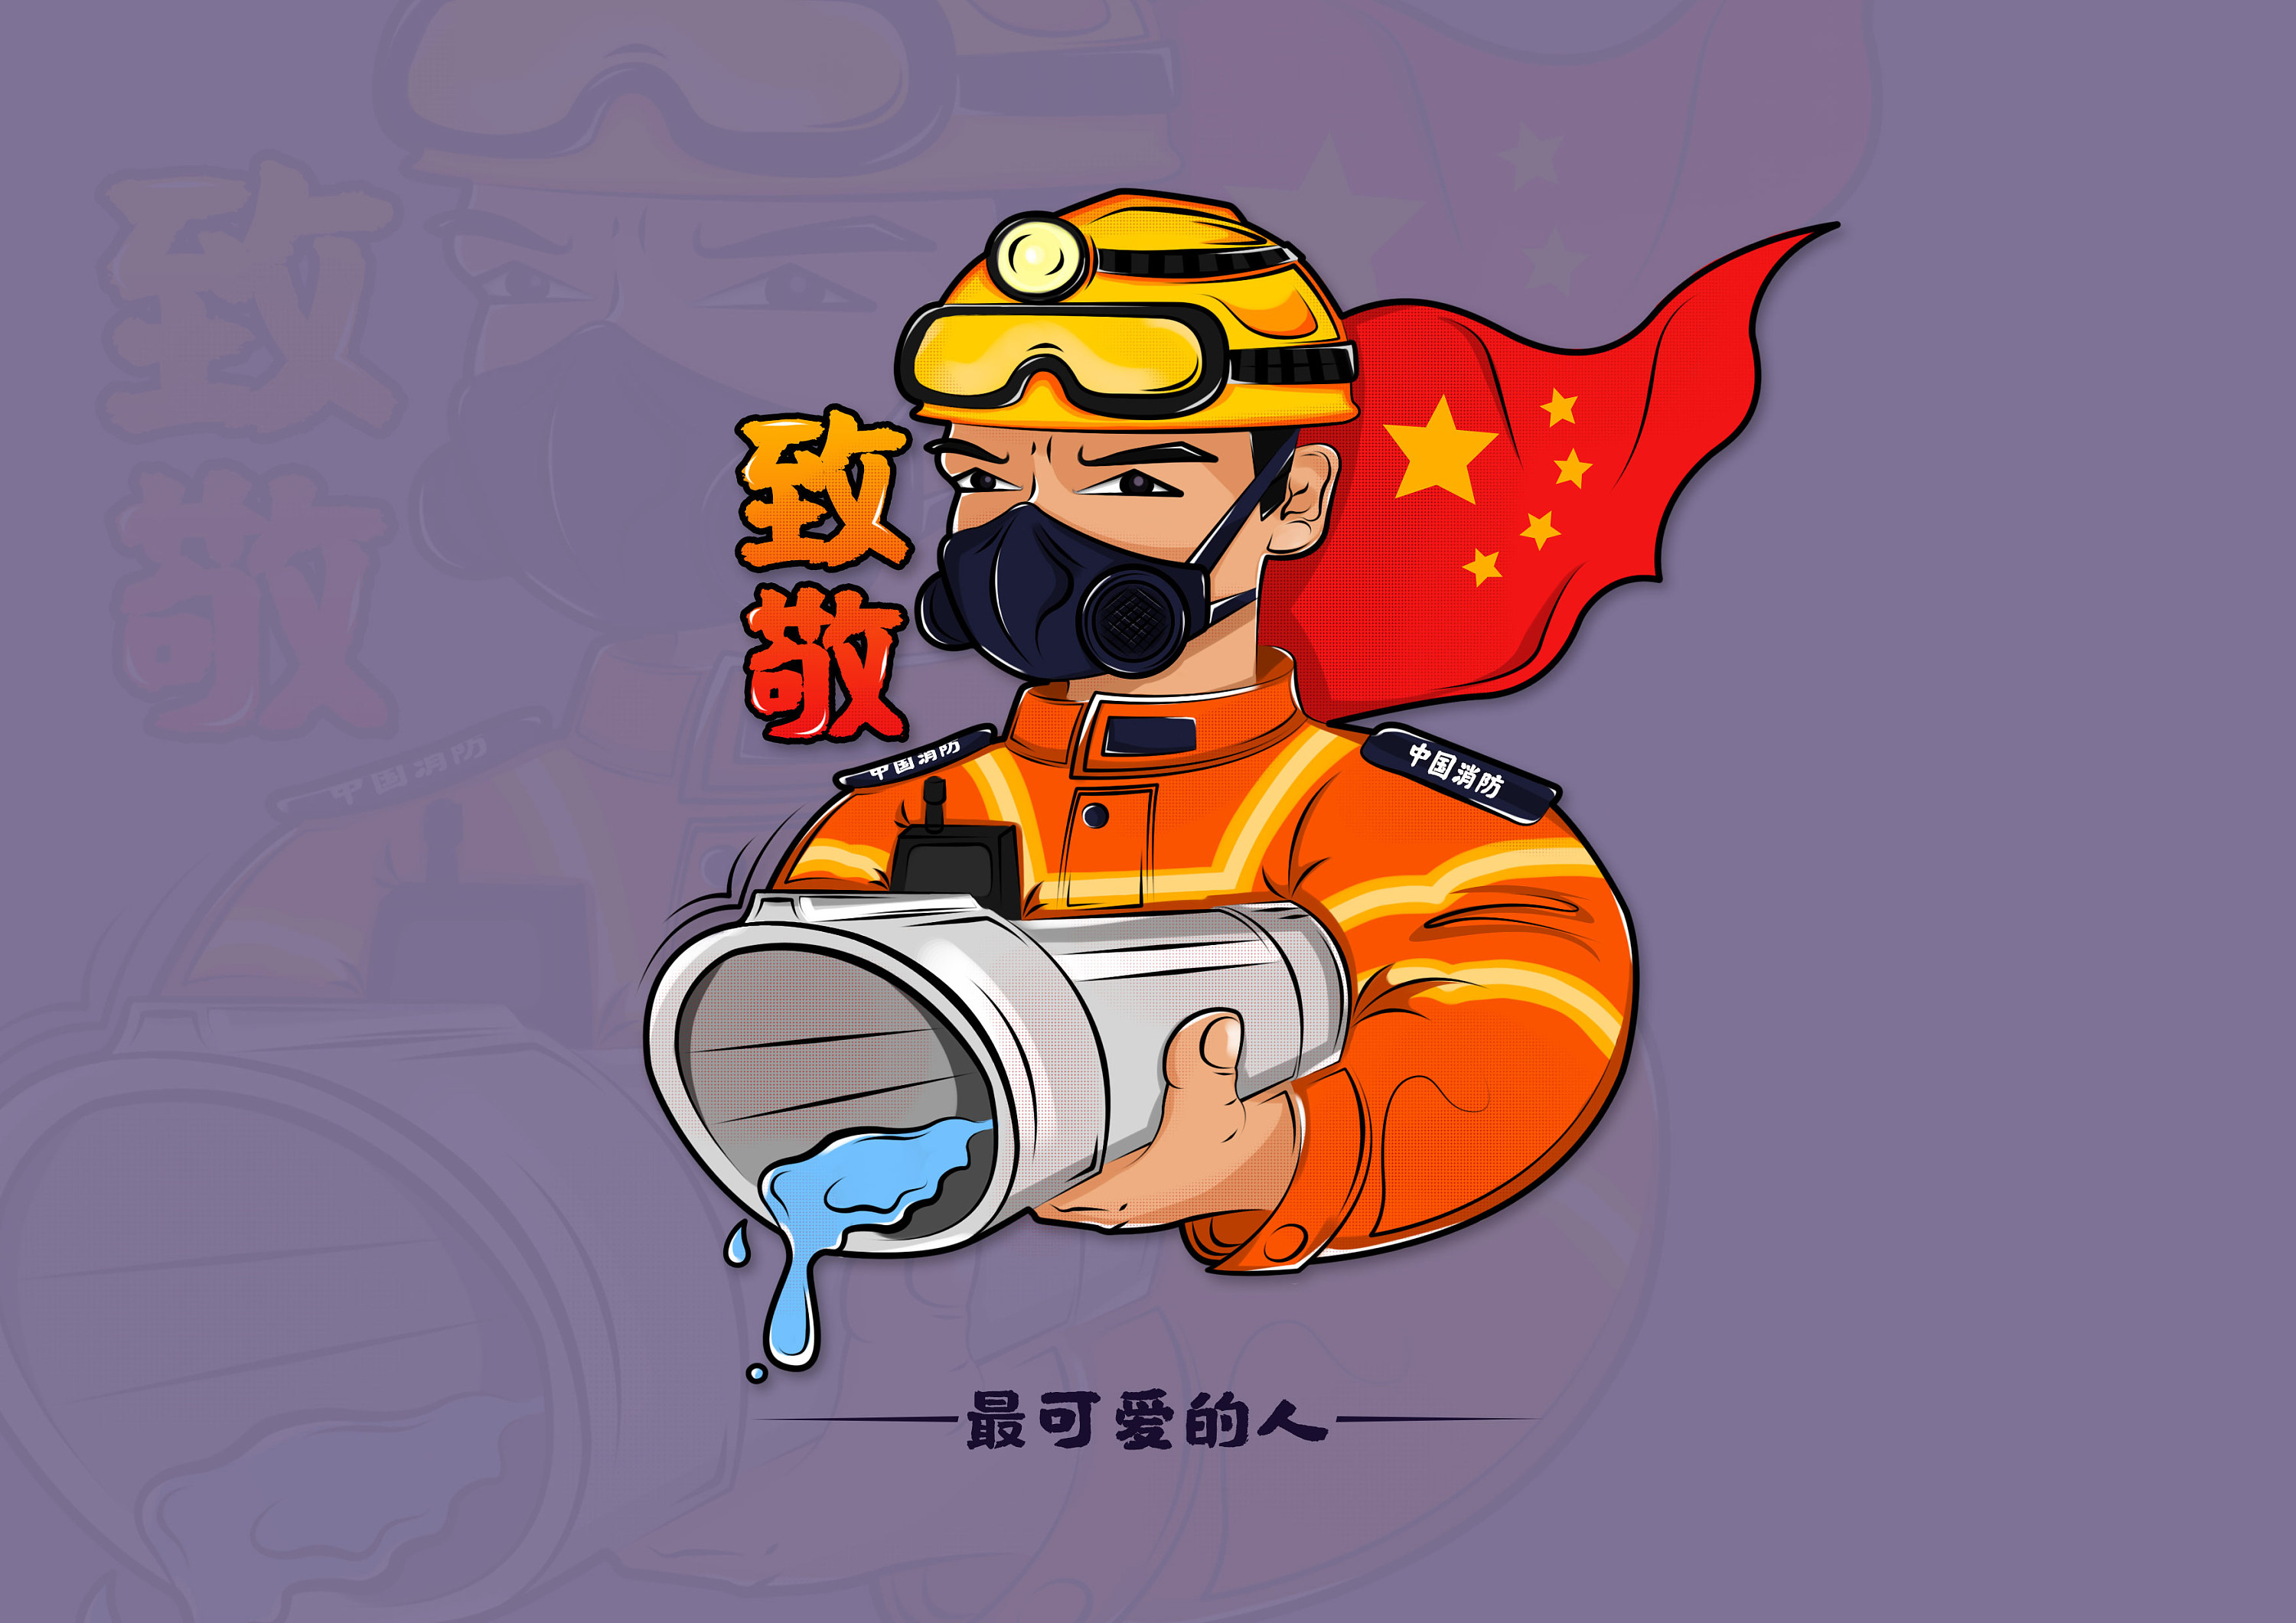 漫画“疫”瞬间丨致敬抗击疫情一线的军人身影 - 中国军网